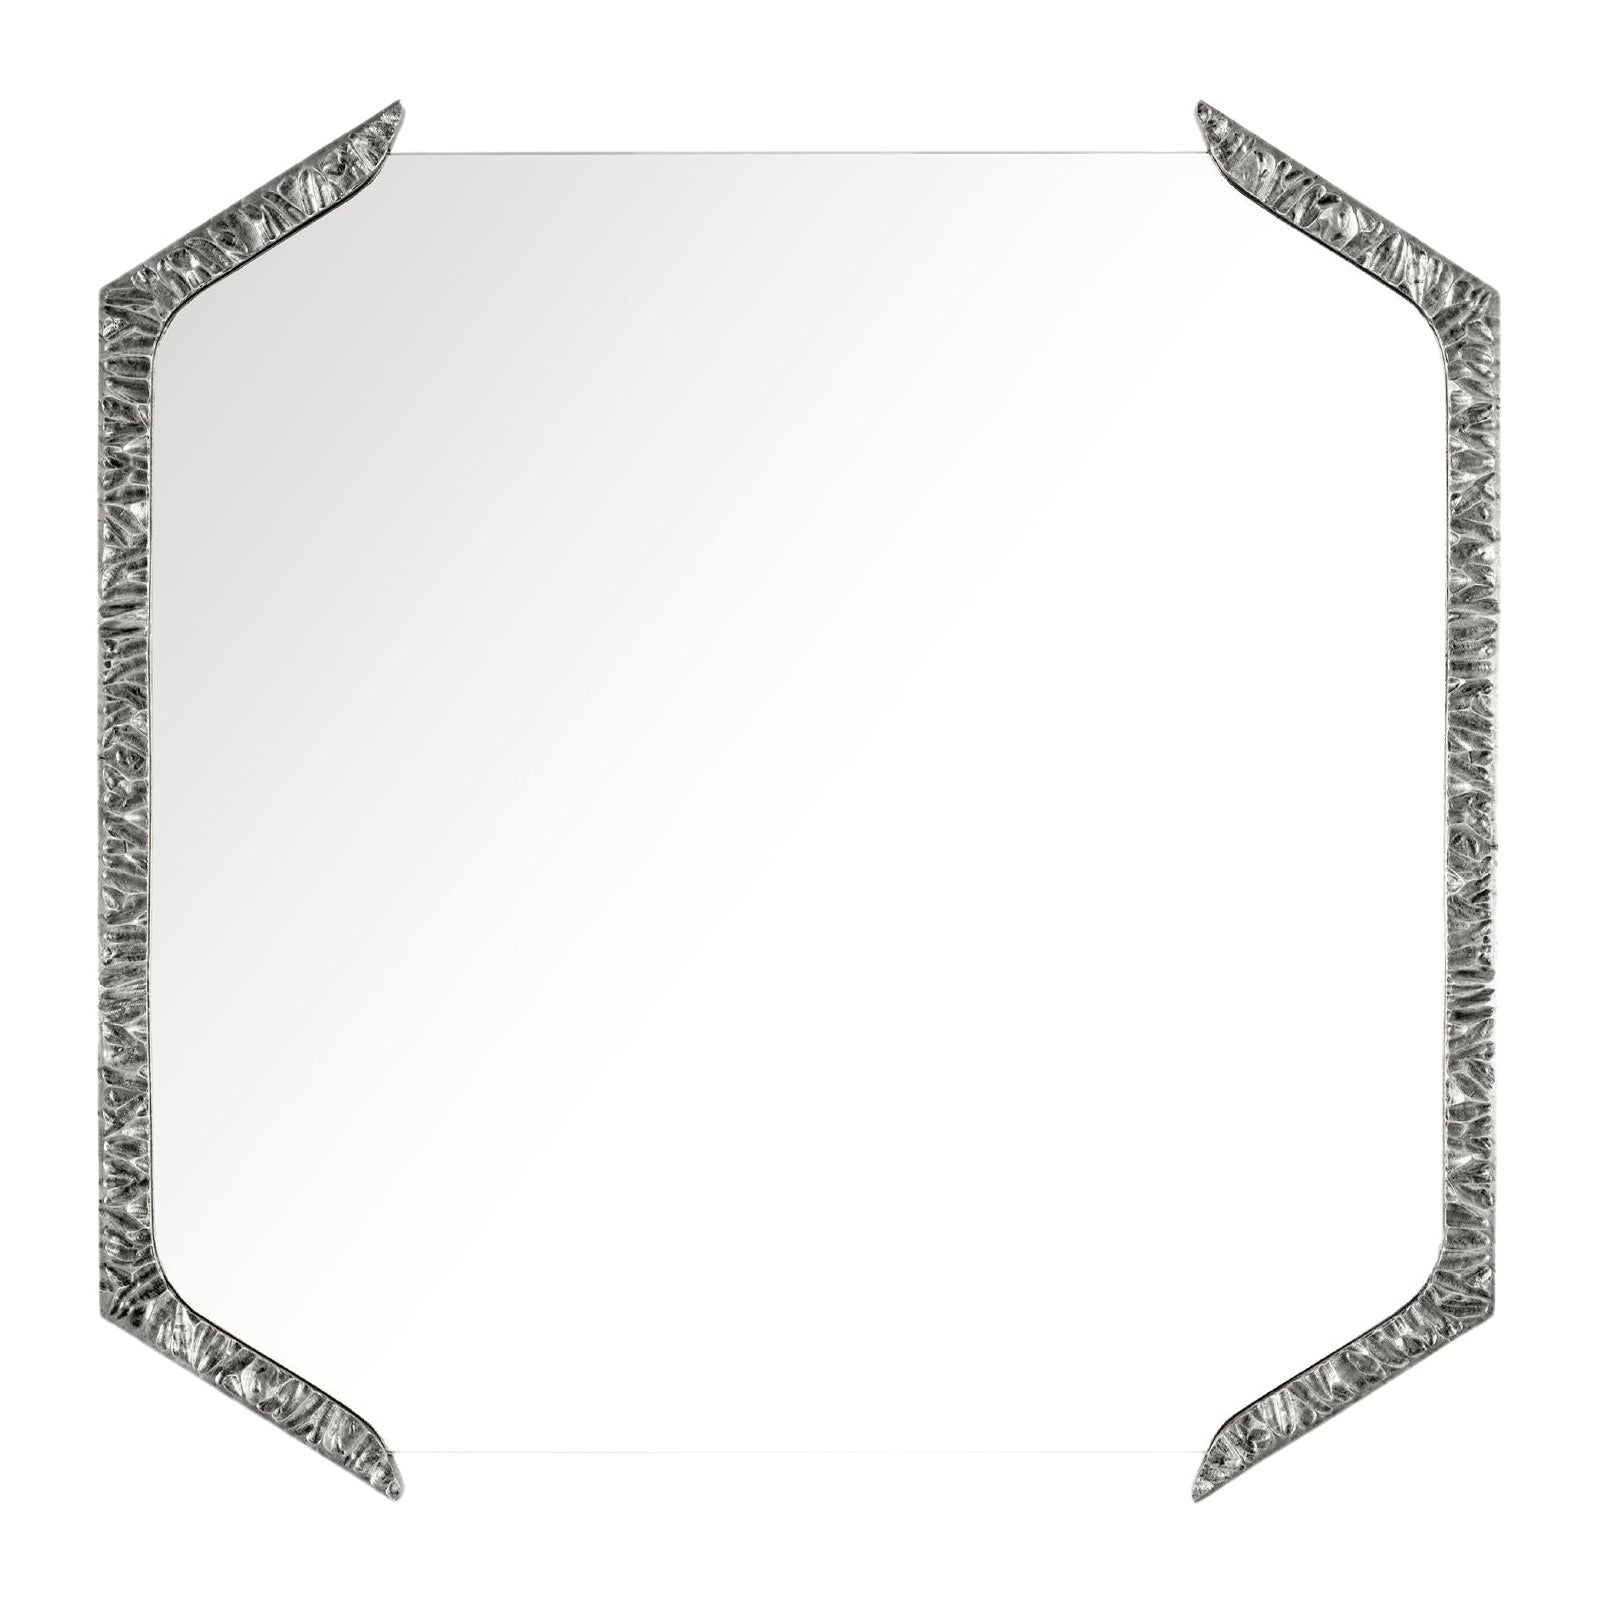 Quadratischer Alentejo-Spiegel, Nickel, InsidherLand von Joana Santos Barbosa